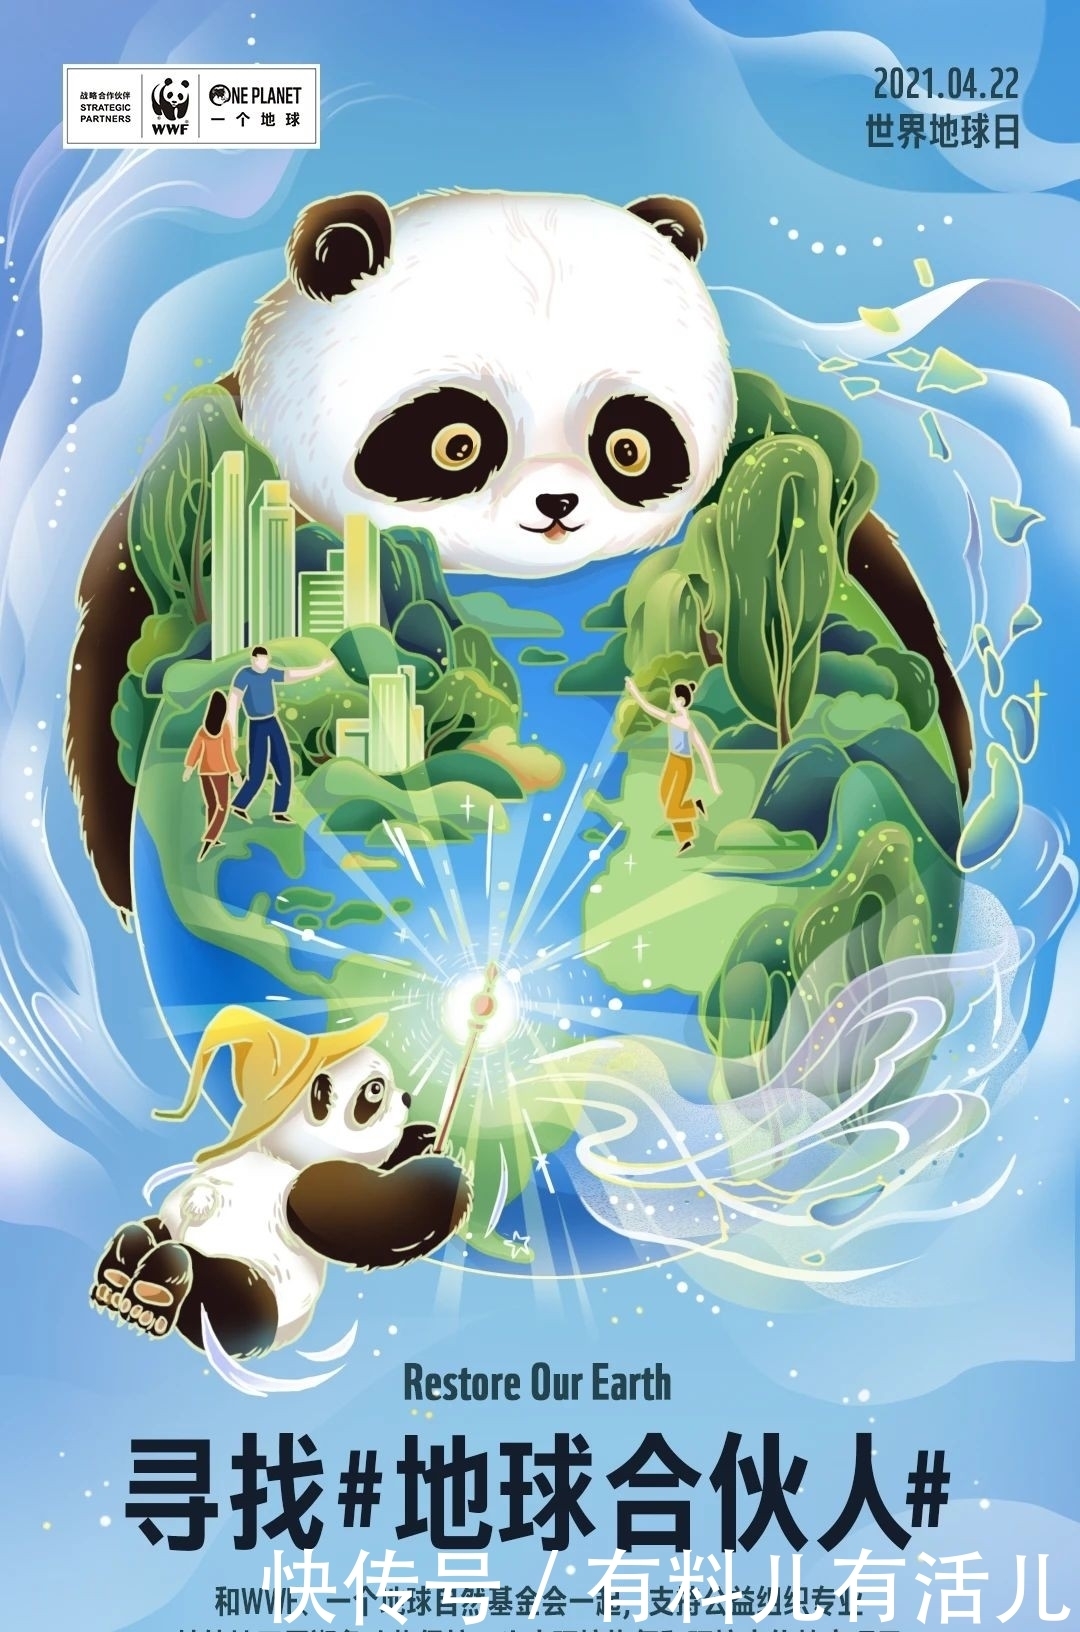 世界地球日的设计海报来了 哪个设计最出彩 全网搜